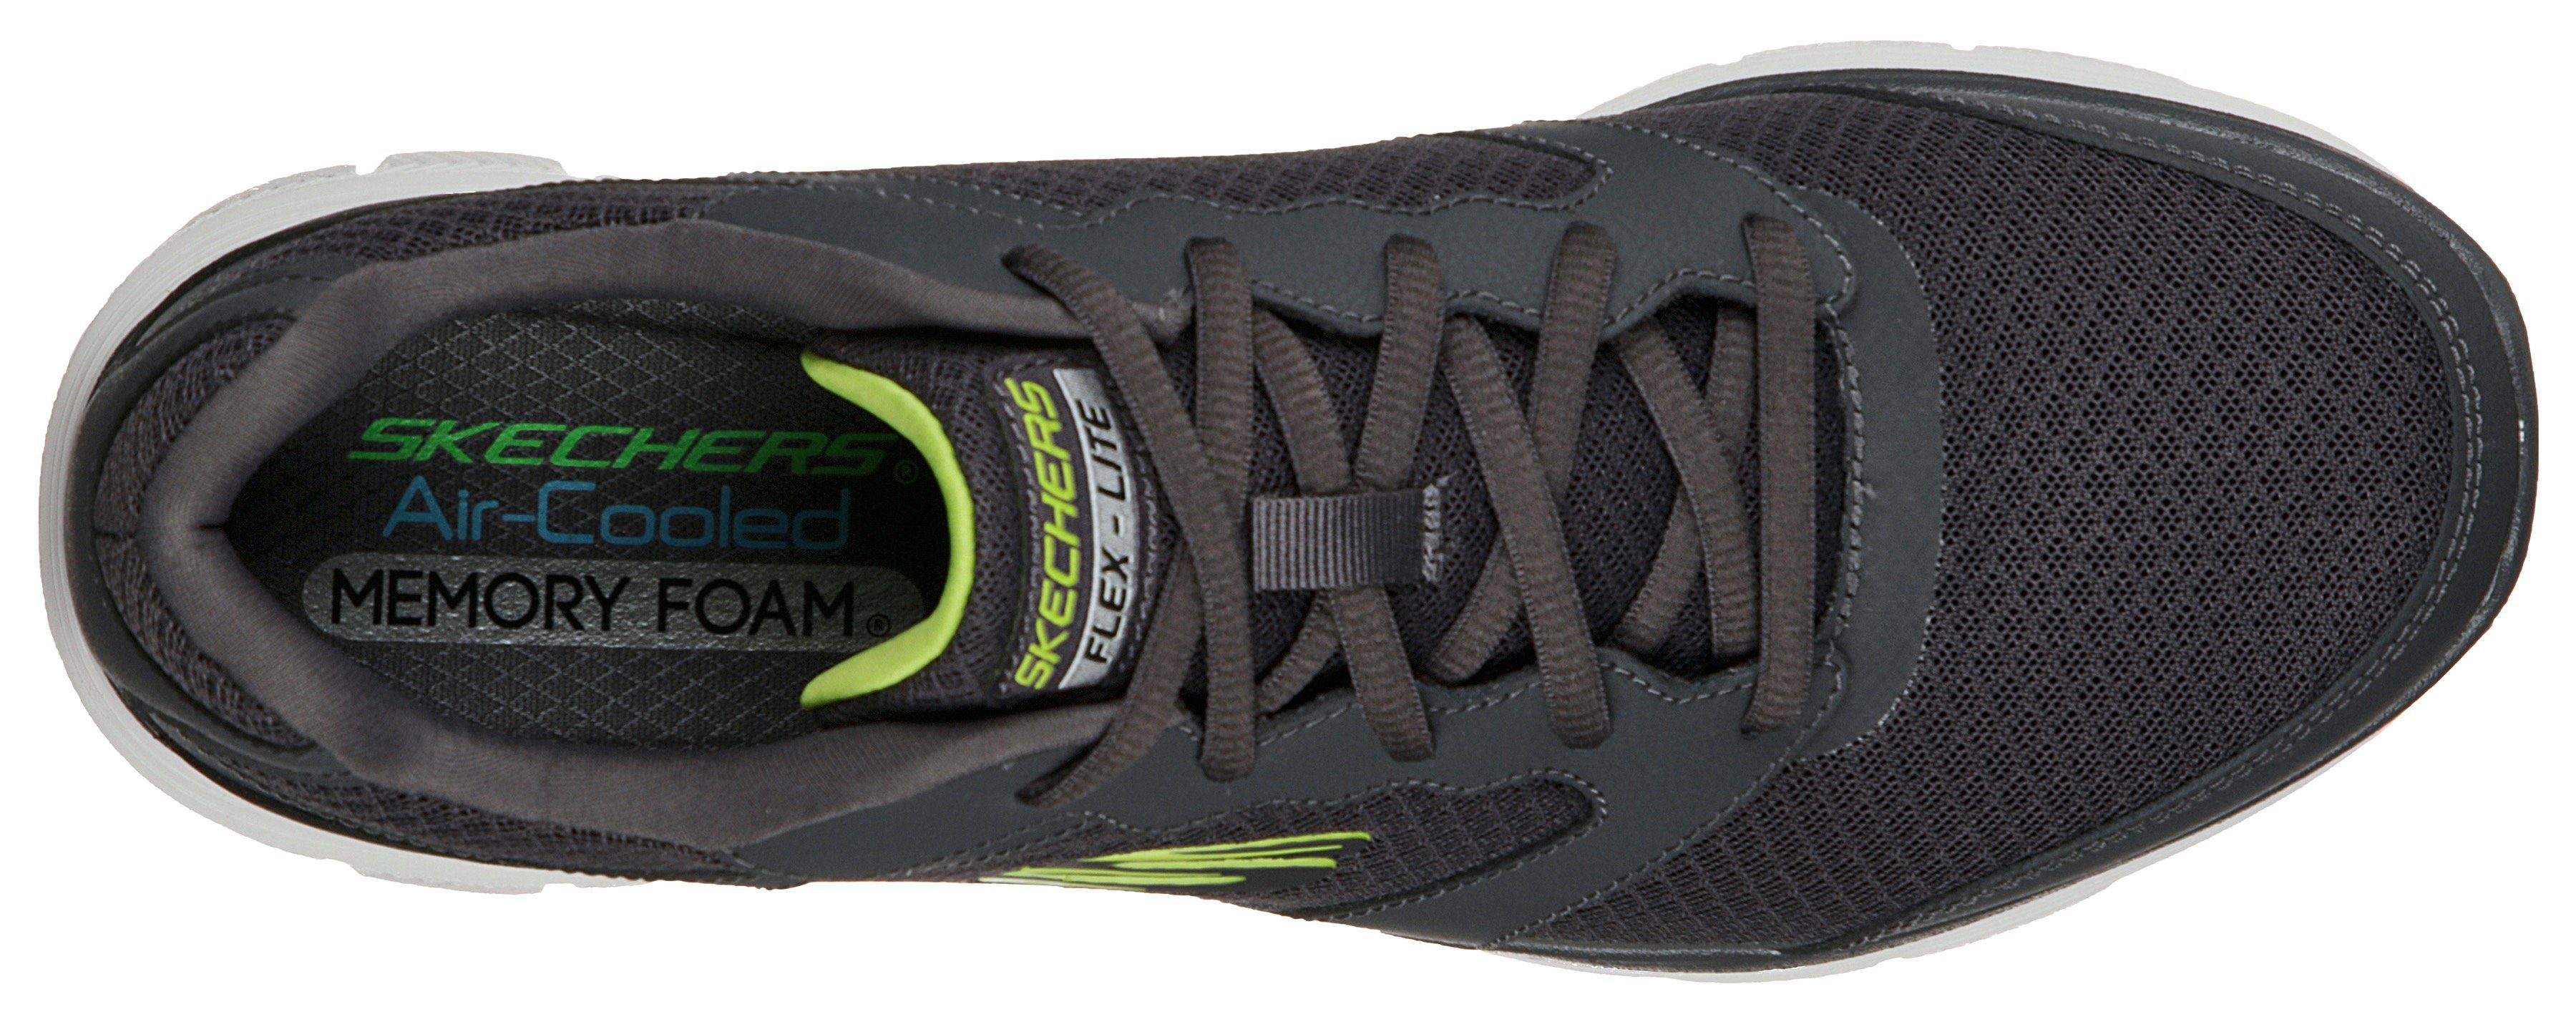 Skechers Sneaker mit 4.0 Profil FLEX grau ADVANTAGE leichtem